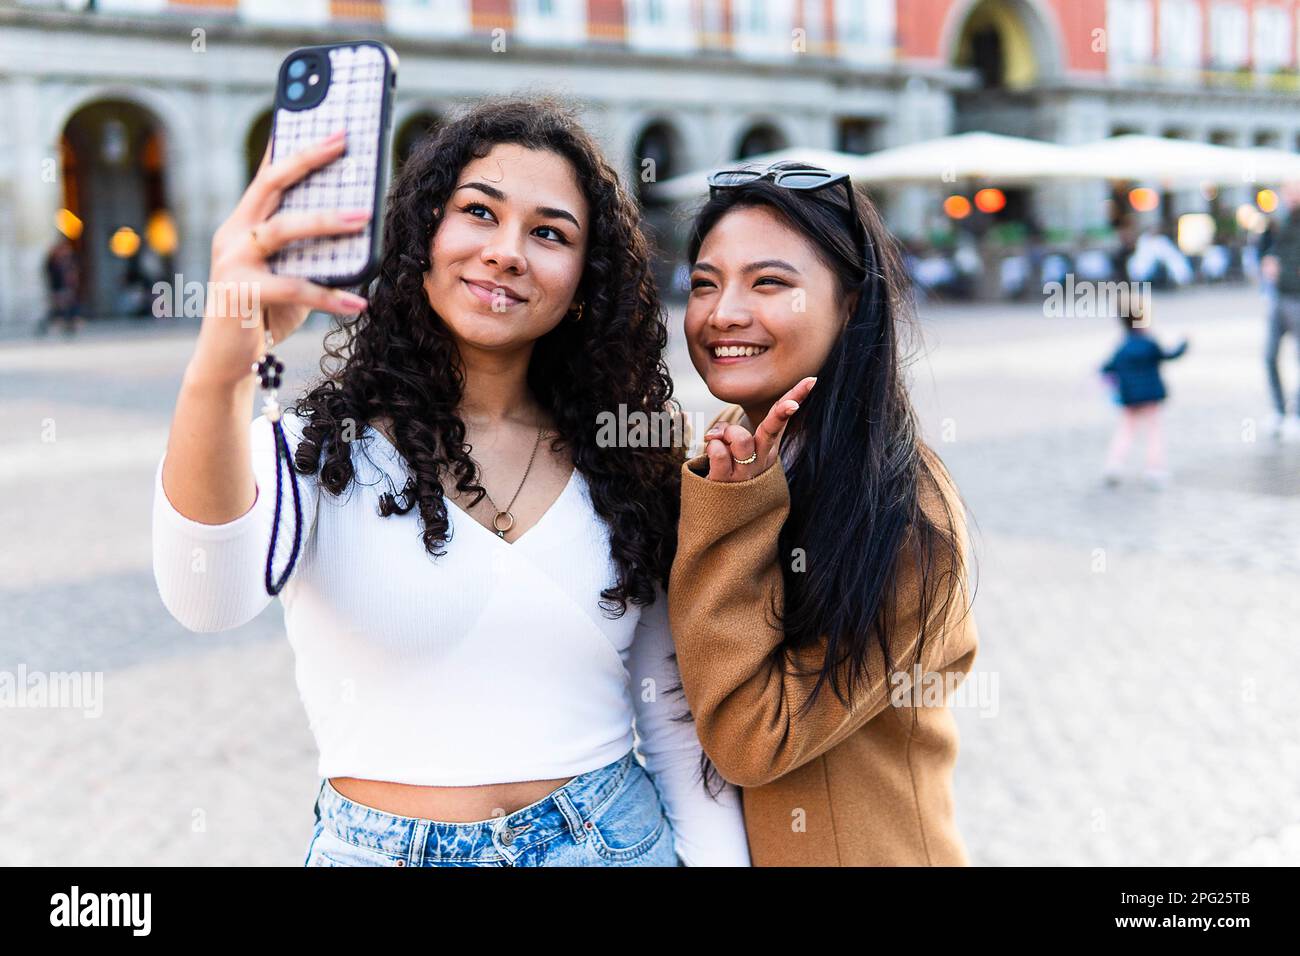 Bestandsfoto von glücklichen Freunden, die mit dem Handy fotografieren Stockfoto